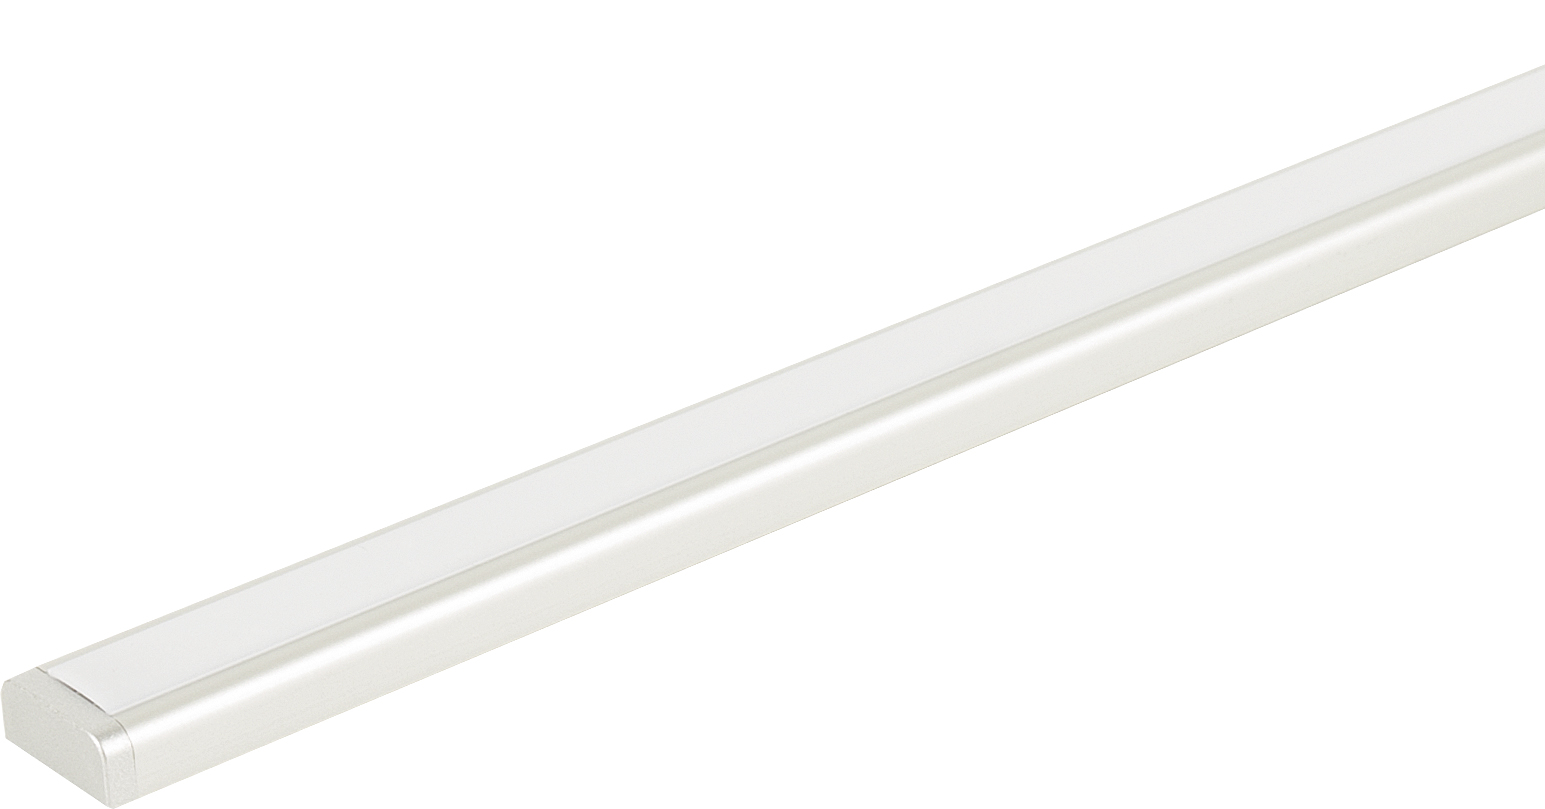 светильник BEAM Touch Master Duet с датчиком касания, наклад, 1500мм, белый(альпина)/352.21.1500NW / 33466 / оптом и в розницу / мебельная фурнитура "ЛАВР"